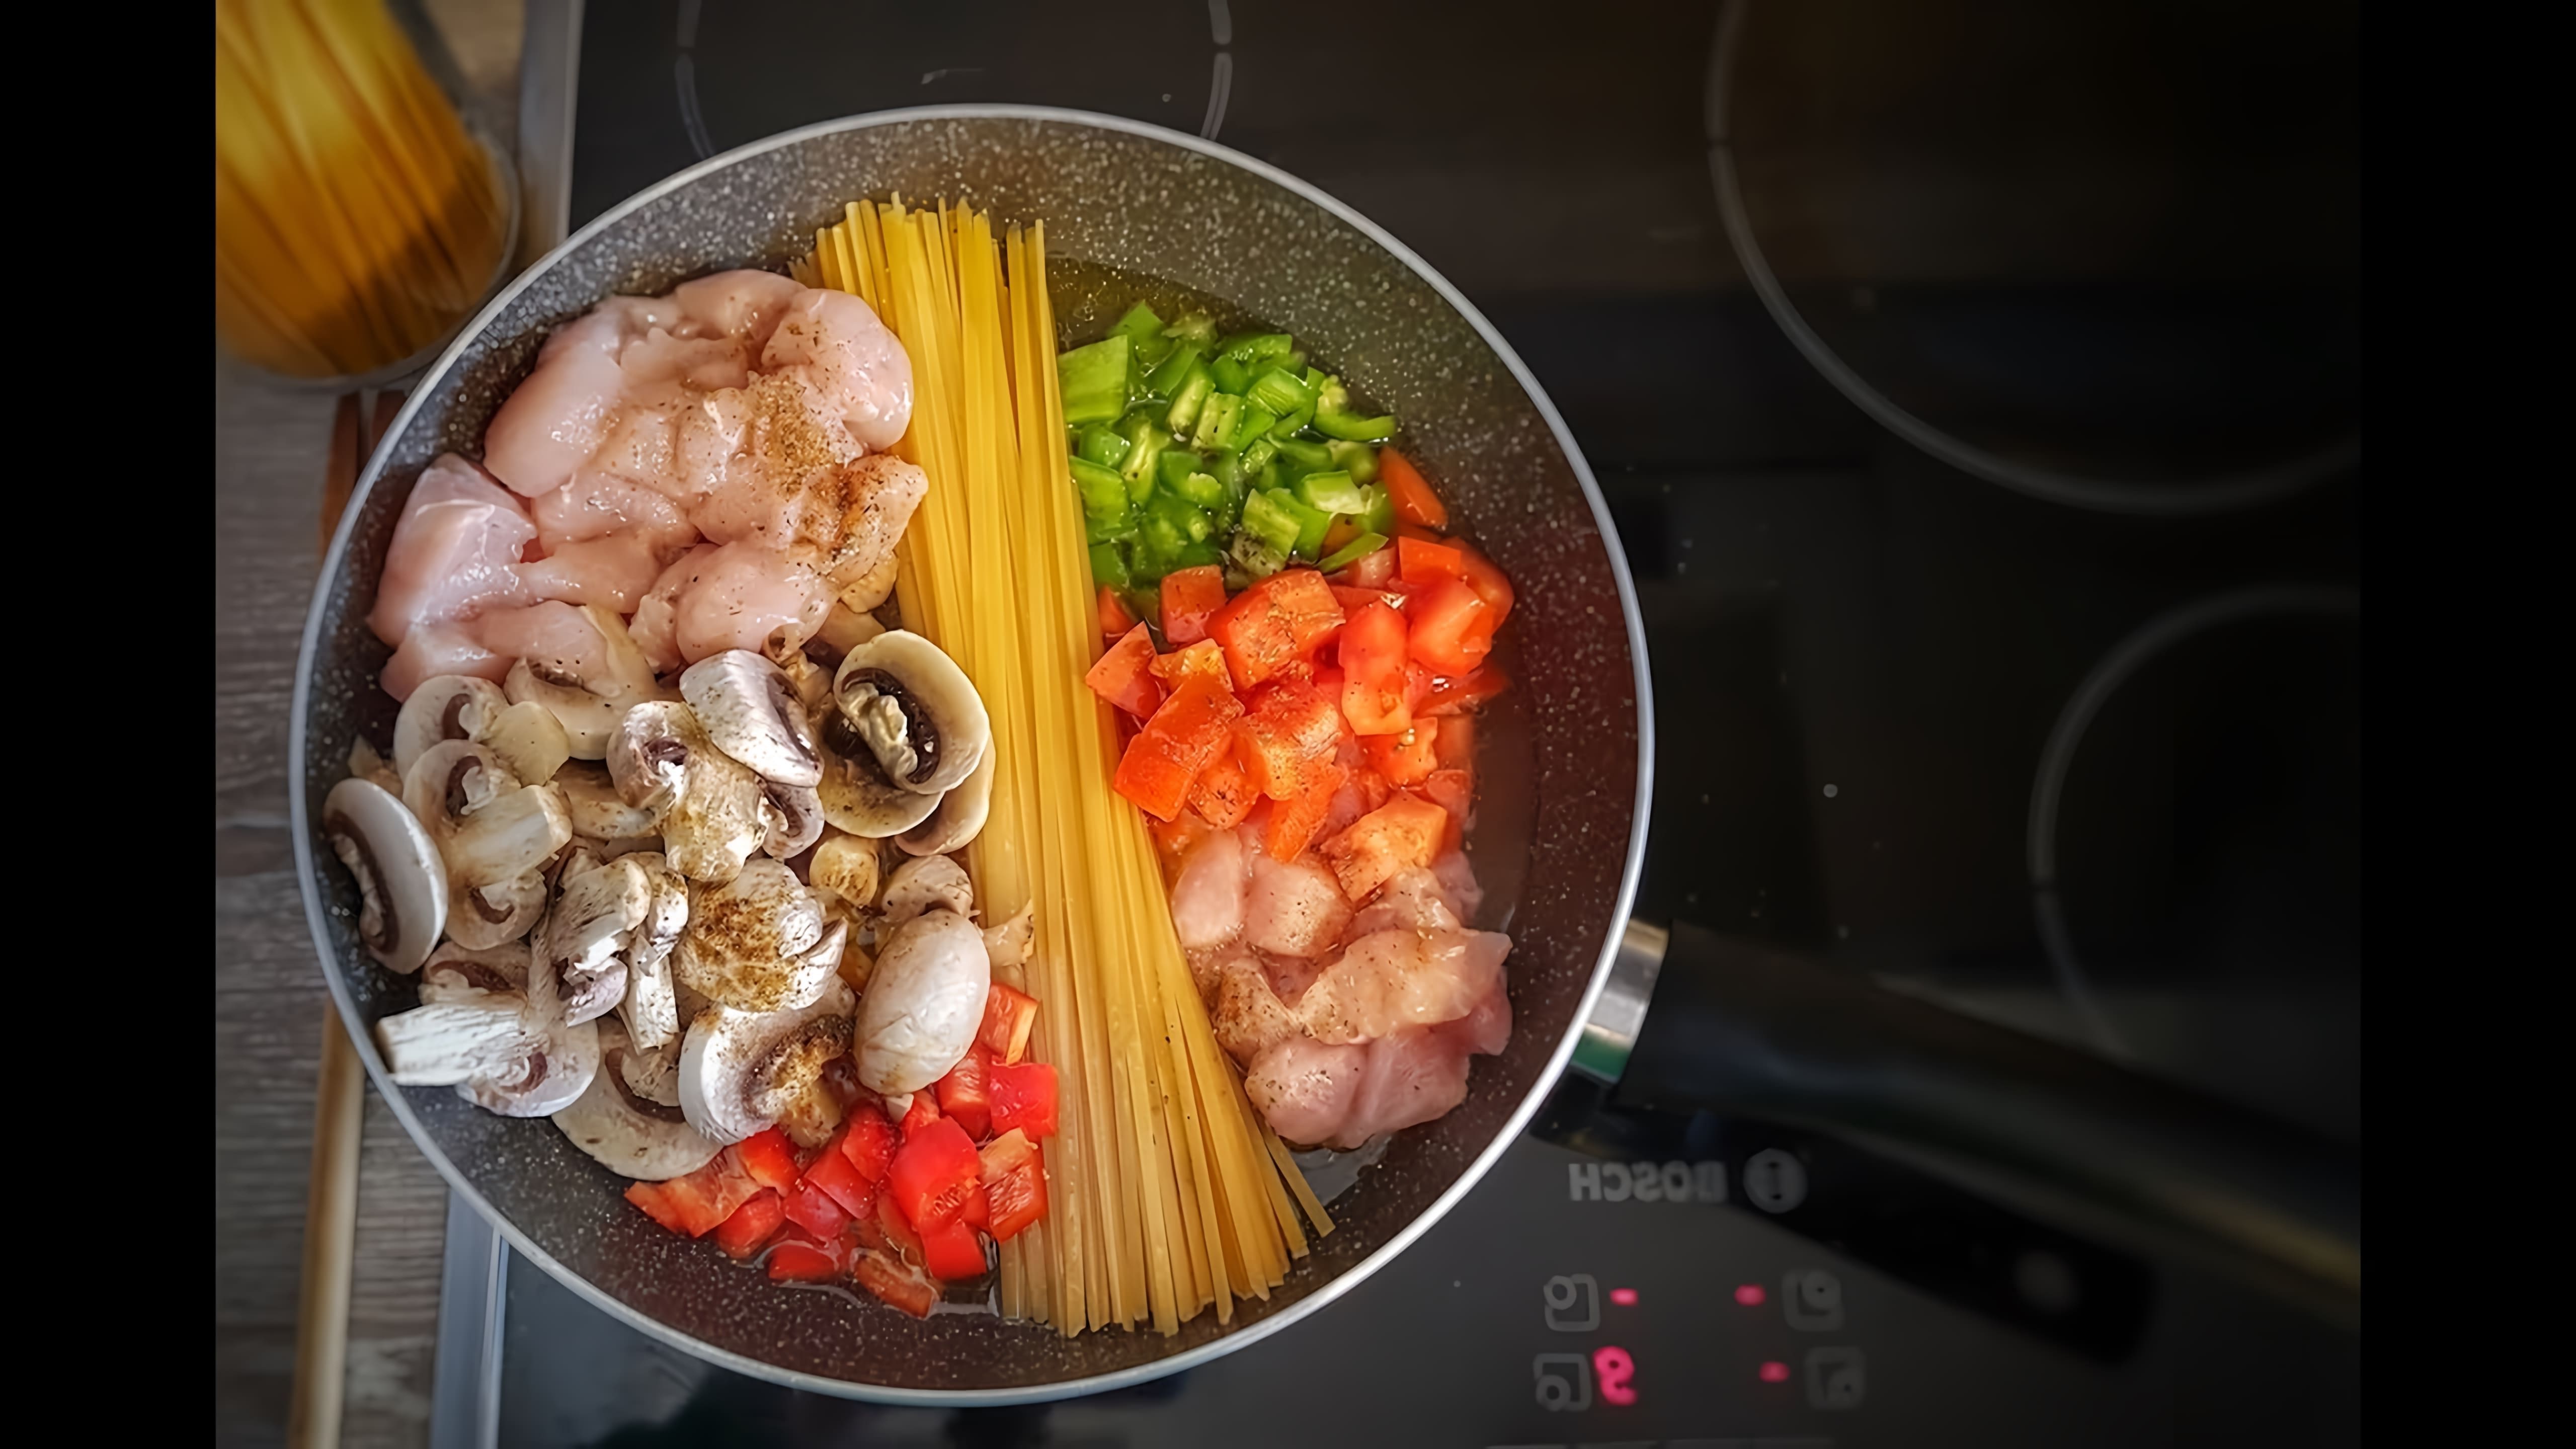 В этом видео демонстрируется процесс приготовления итальянского блюда макароны с мясом в одной сковородке